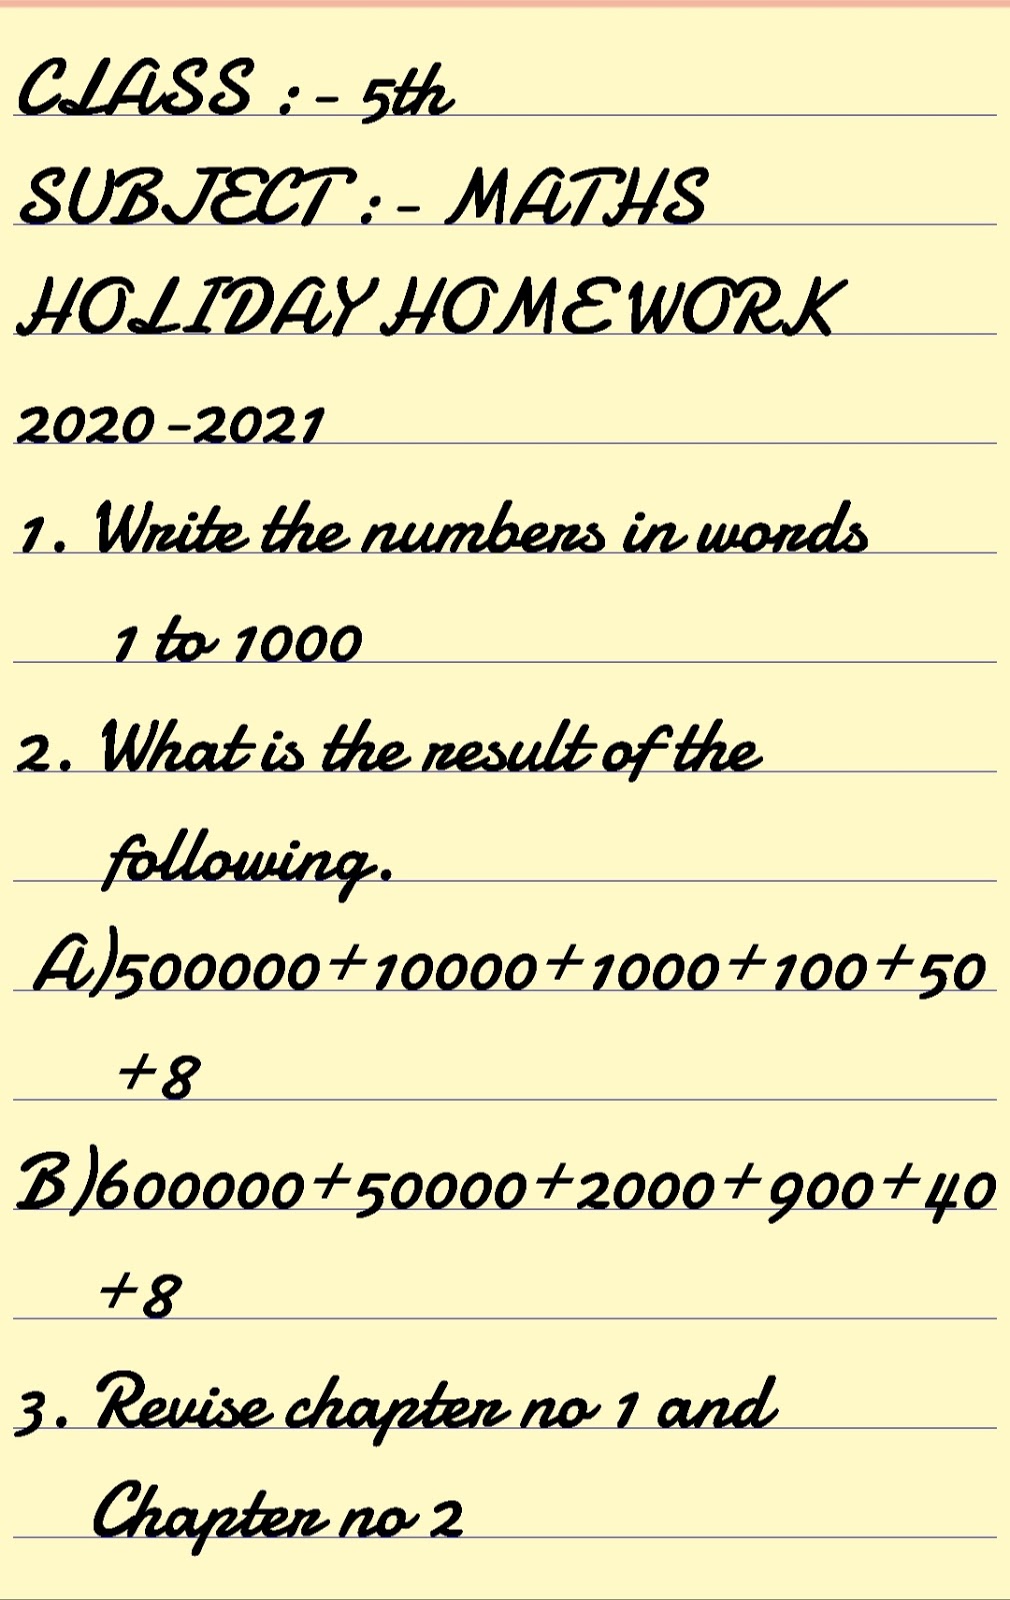 holiday homework maths class 5